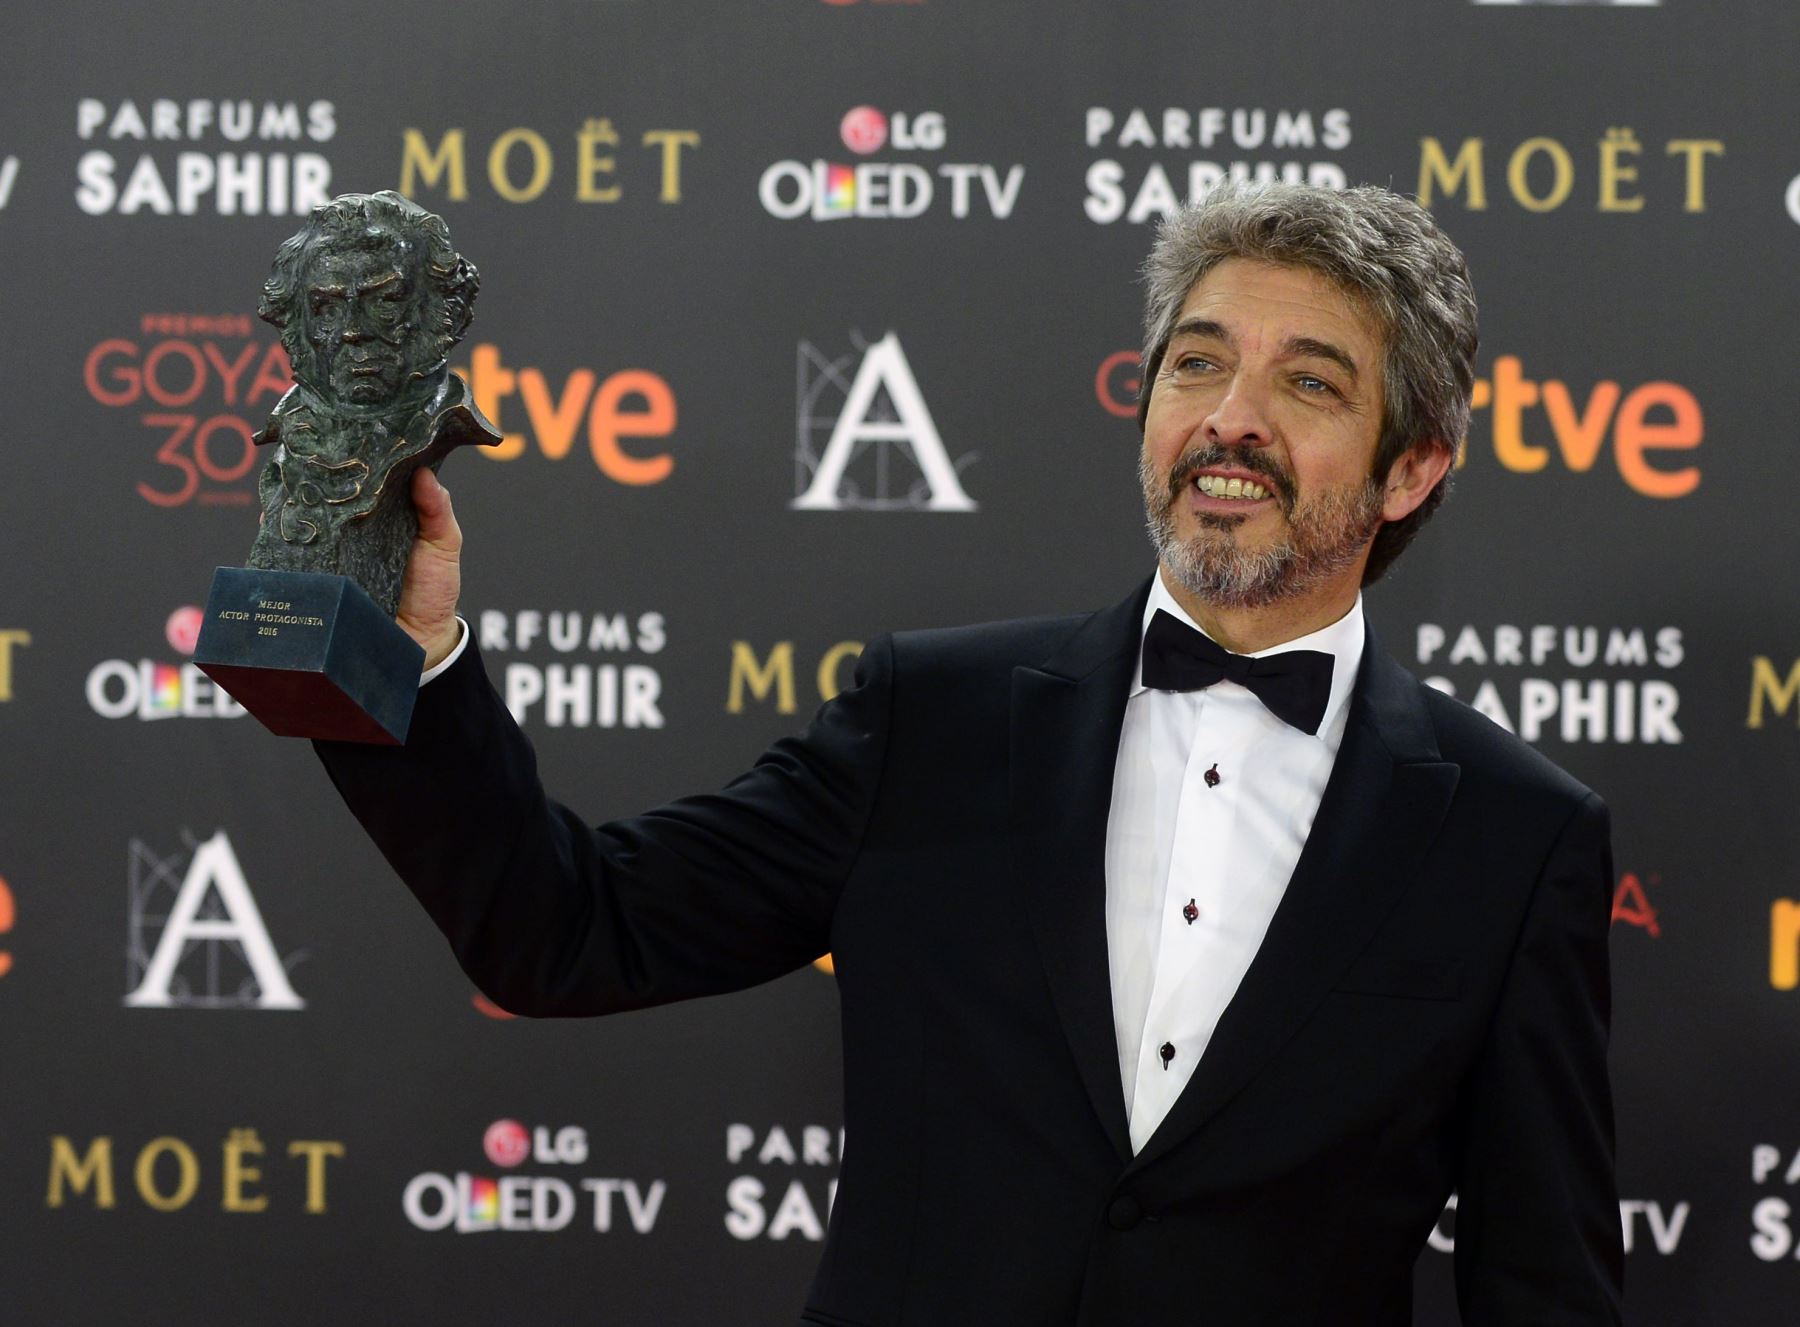 El actor argentino Ricardo Darin posa durante una sesión fotográfica luego de recibir el premio Goya al mejor actor por su papel en la película "Truman" en la 30 entrega de los premios de cine de Goya en Madrid.
Foto: AFP